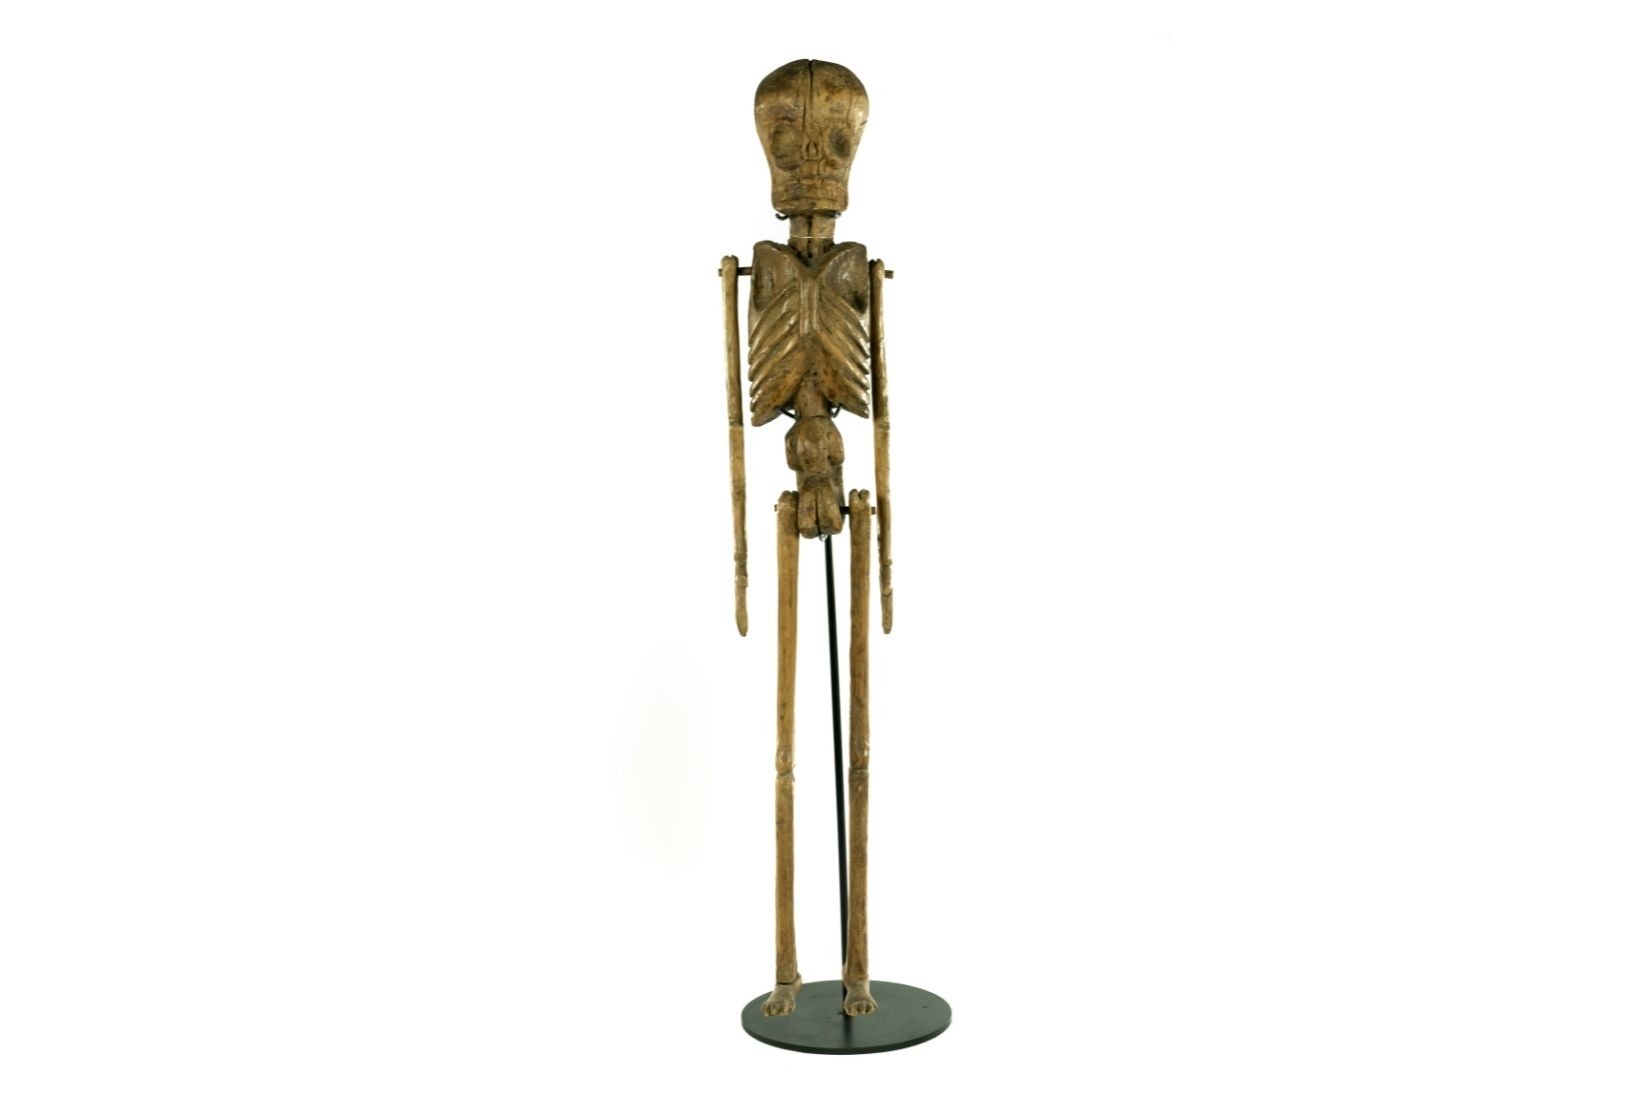 Esqueleto de madera tallada. Artesano y procedencia desconocidos. Donante Guillermo Tovar y de Teresa. Col. AmigosMAP. (Foto: EKV).